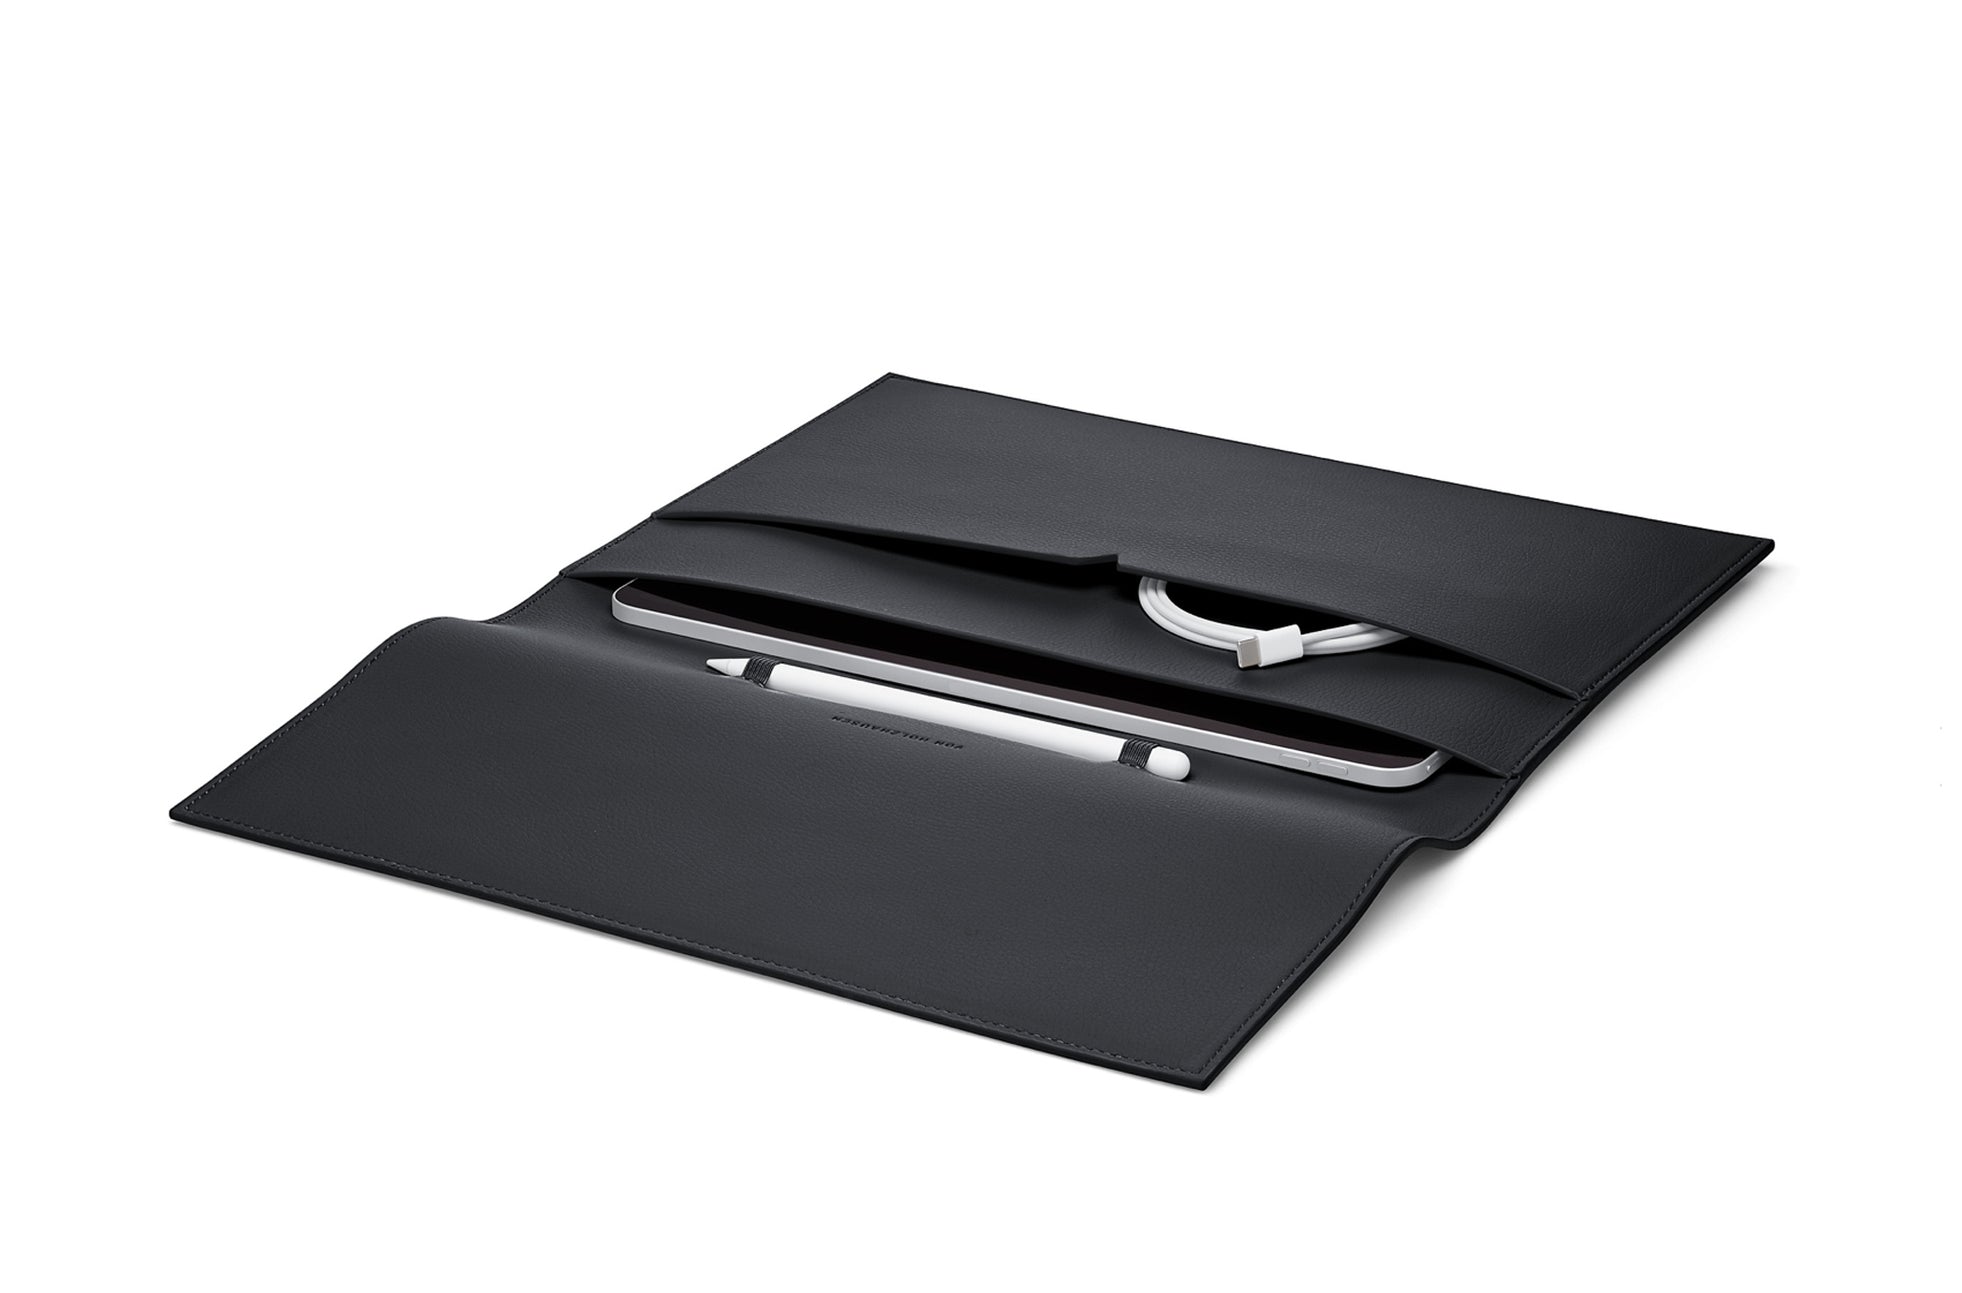 The iPad Portfolio 12.9-inch - Sample Sale in Technik in Black image 4